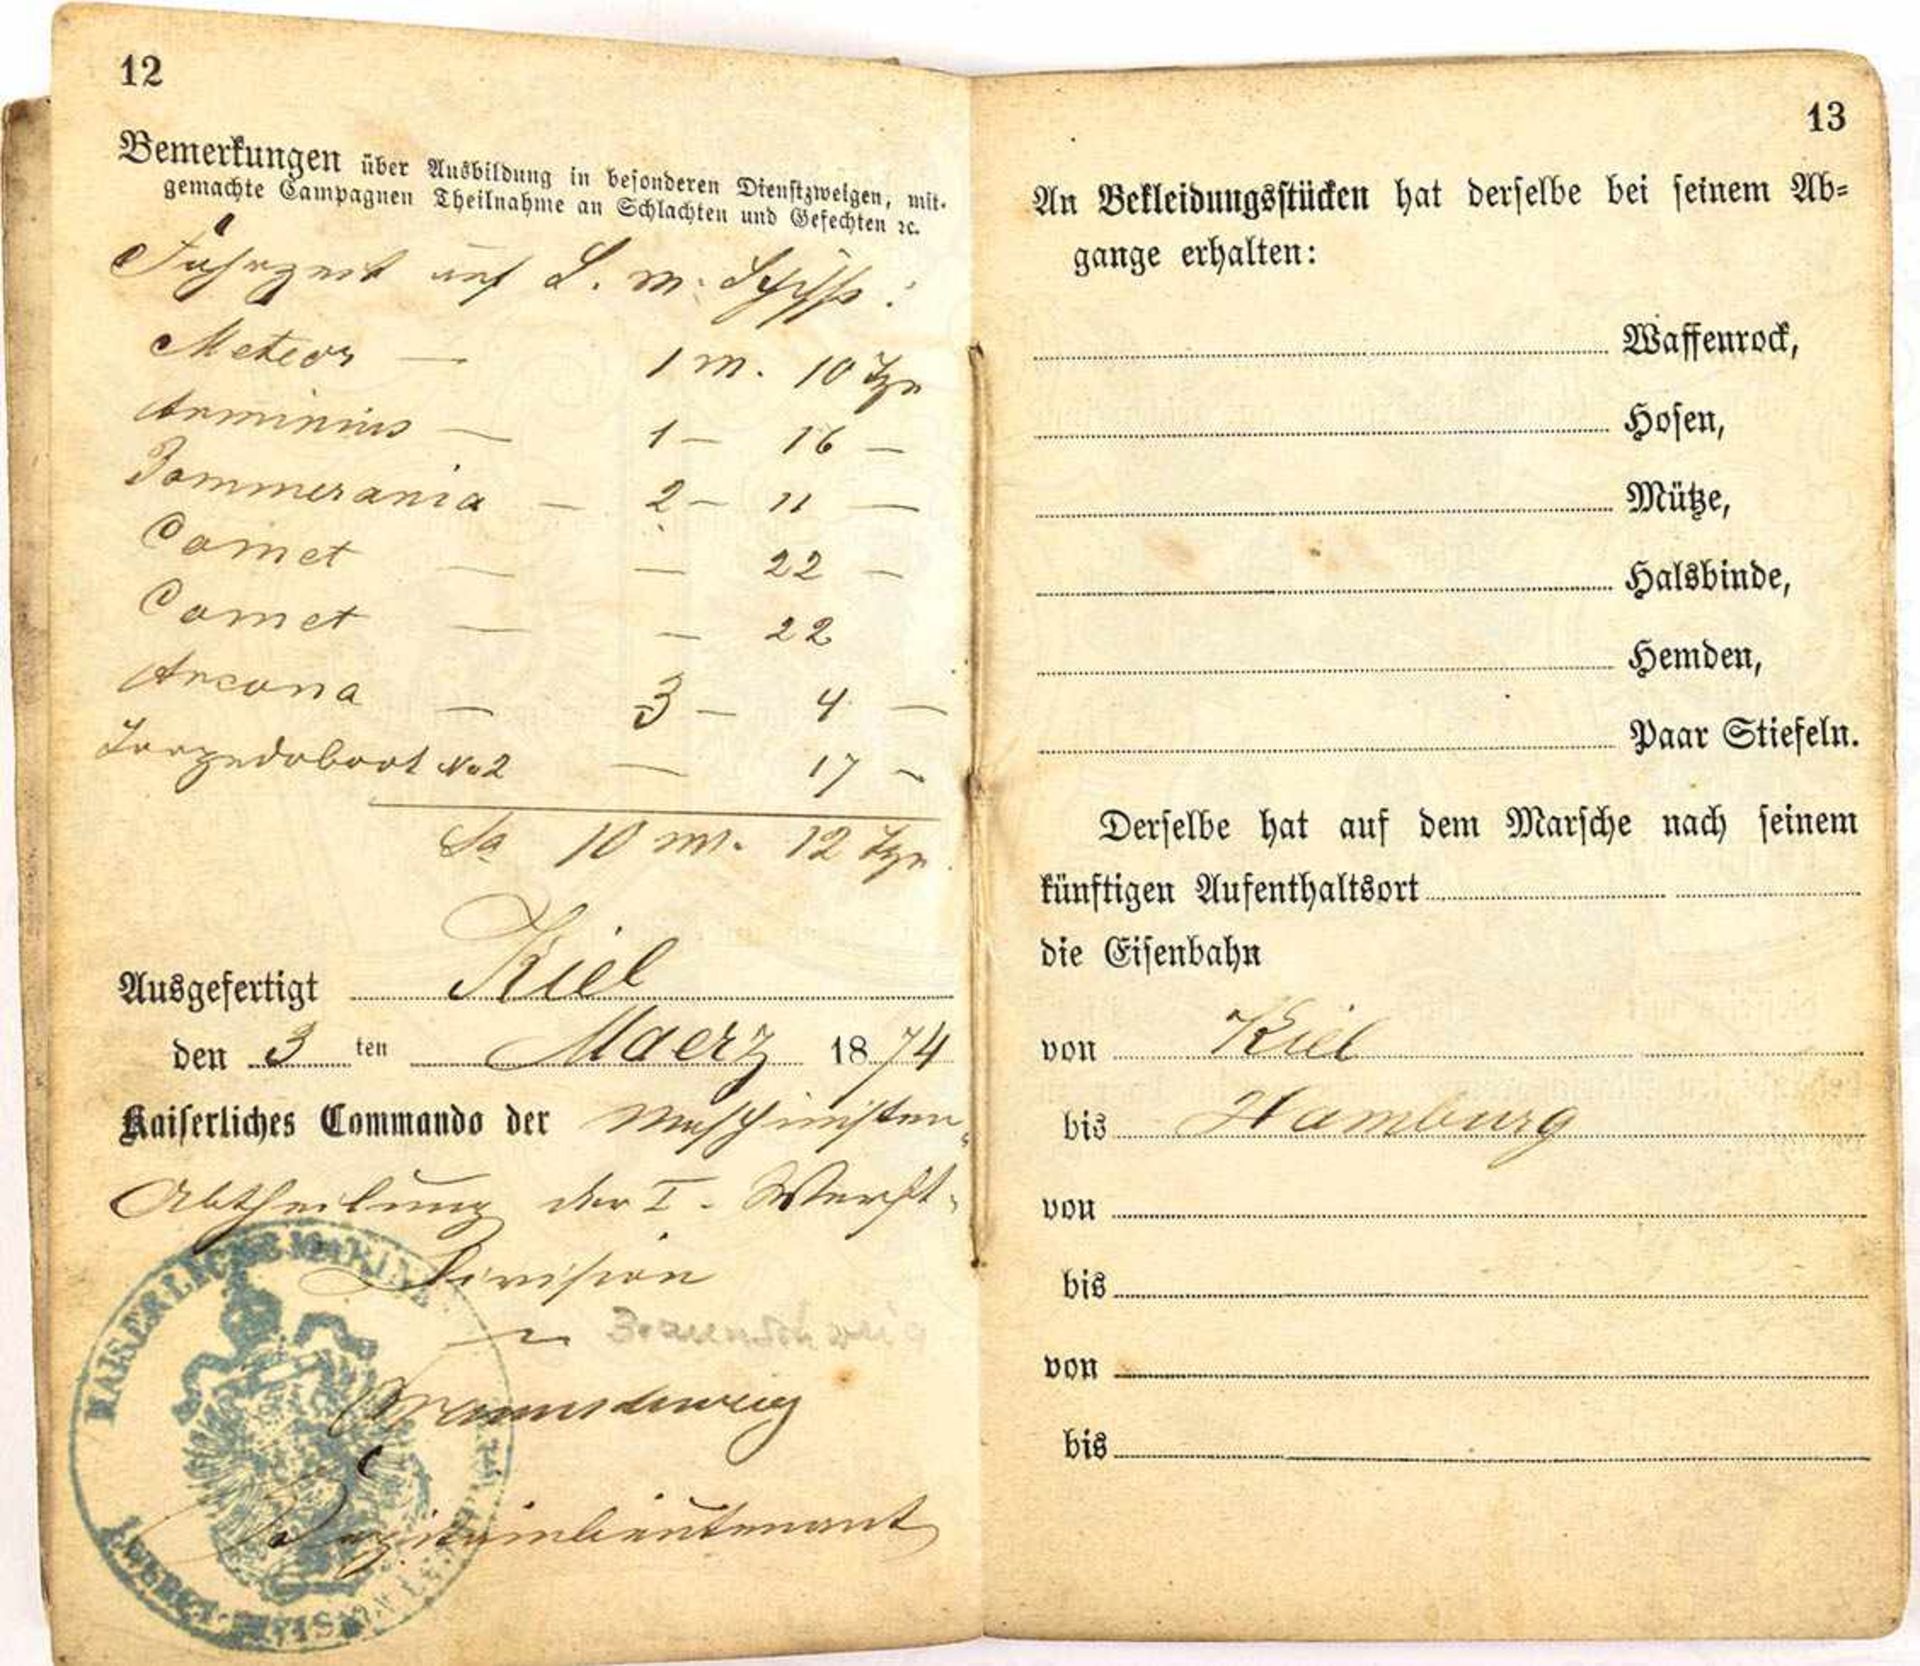 MILITAIR-PAß EINES MASCHINEN-MAATEN, Eintritt am 17. Mai 1871 bei der Maschinisten-Abteilung d. I. - Bild 2 aus 2